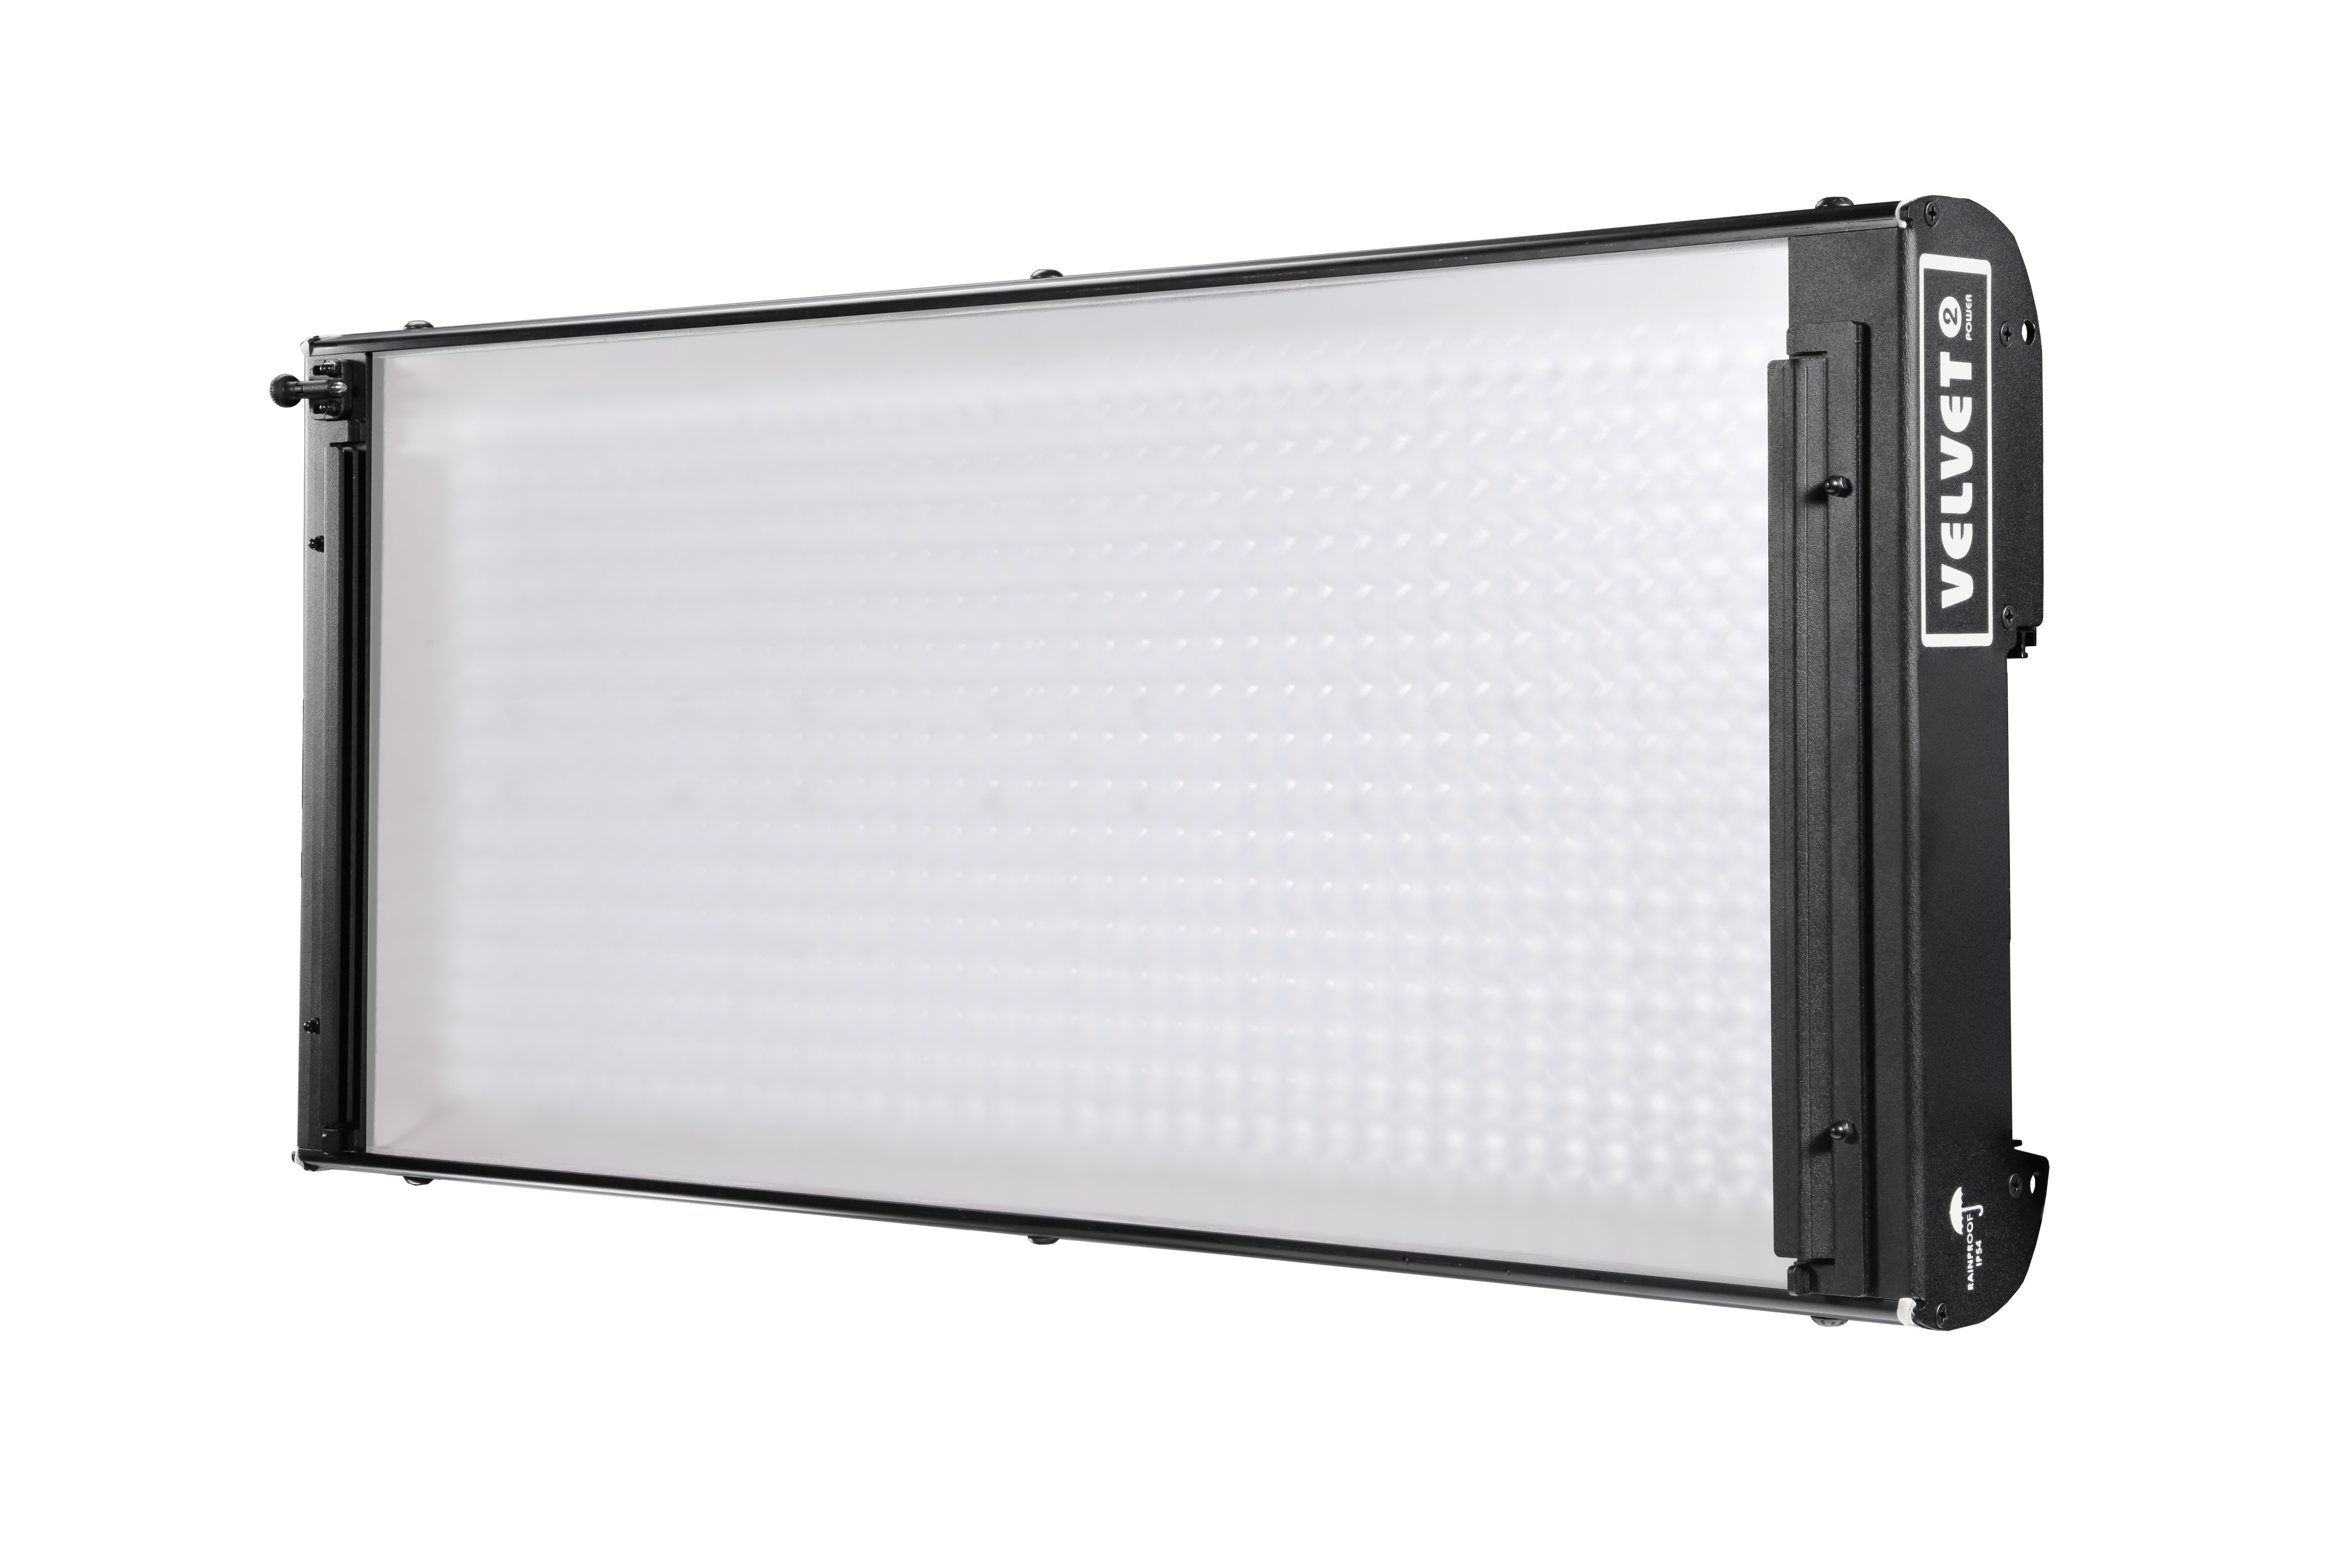 VELVET POWER 2 IP54 LED-Softlight Panel  (ohne Montagebügel!)